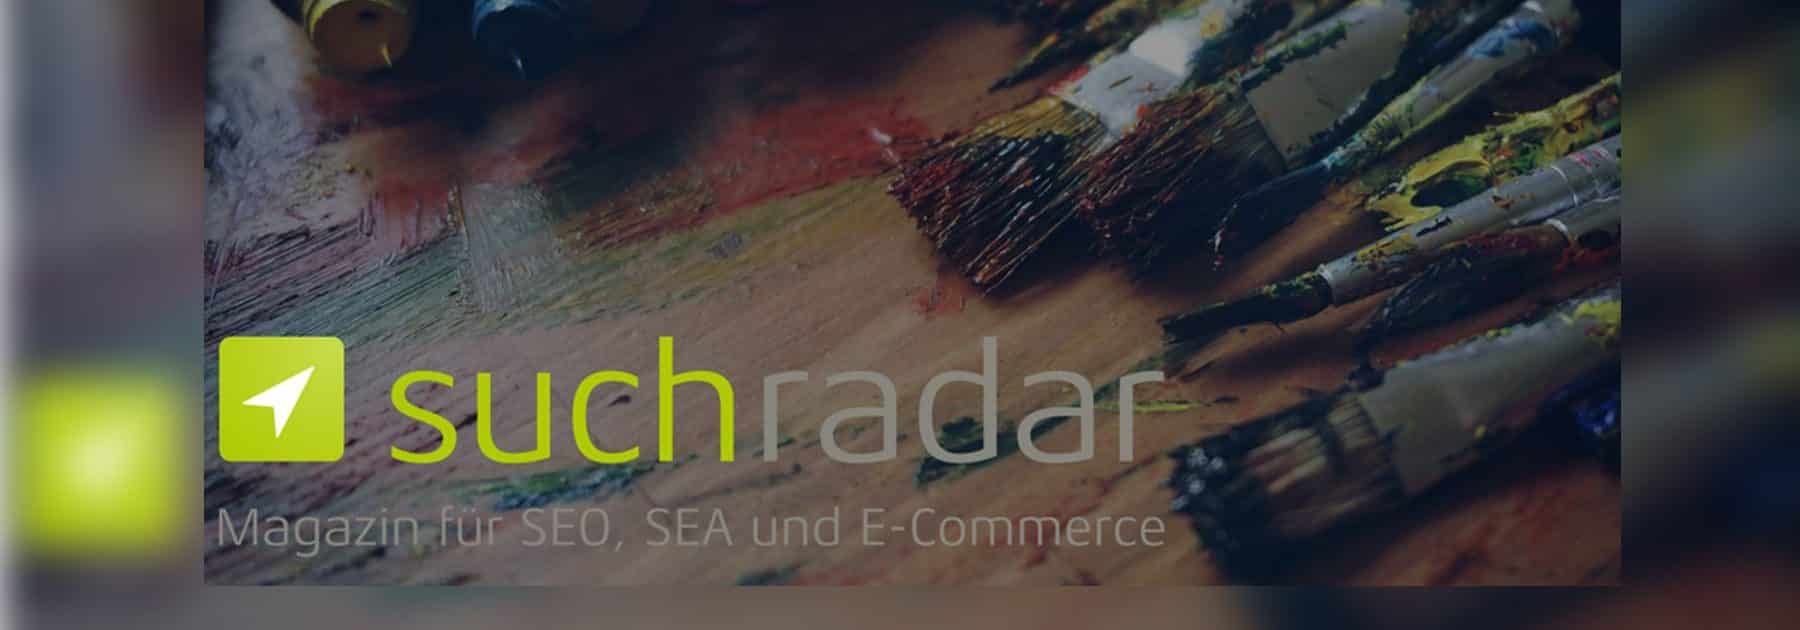 Das Magazin suchradar bietet sowohl Einsteigern als auch Profis, geschäftsrelevante Neuigkeiten rund um SEO, SEA und E-Commerce.